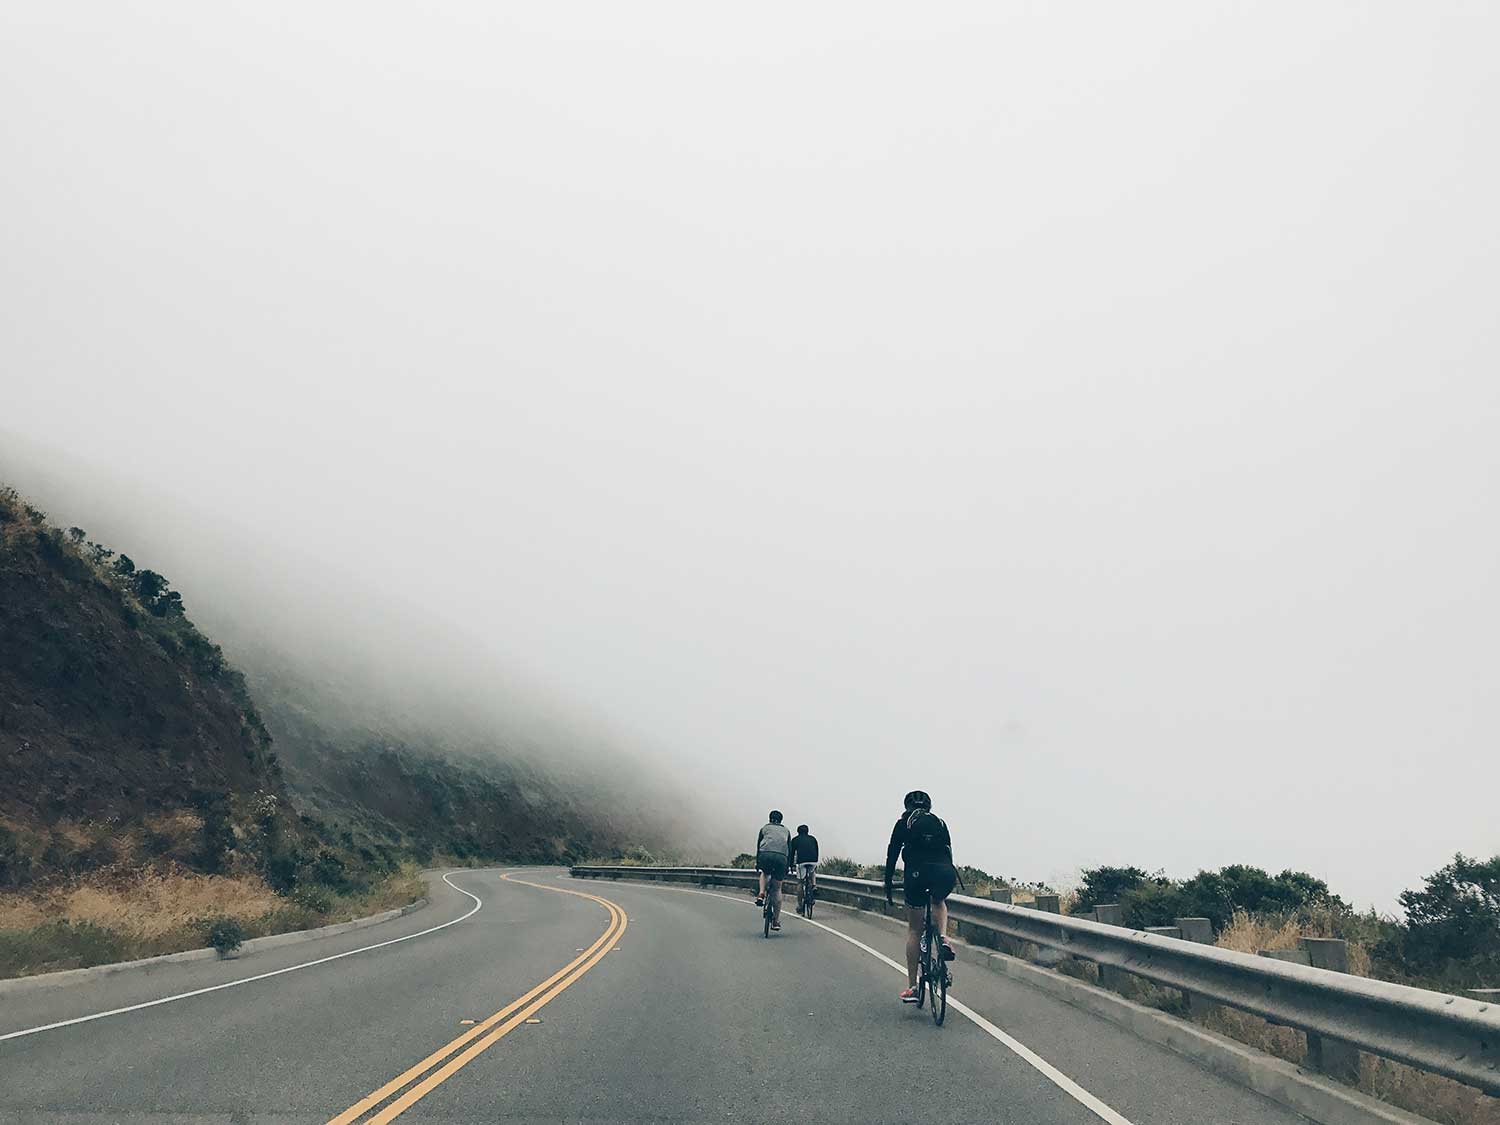 Riding bikes through foggy mountains.